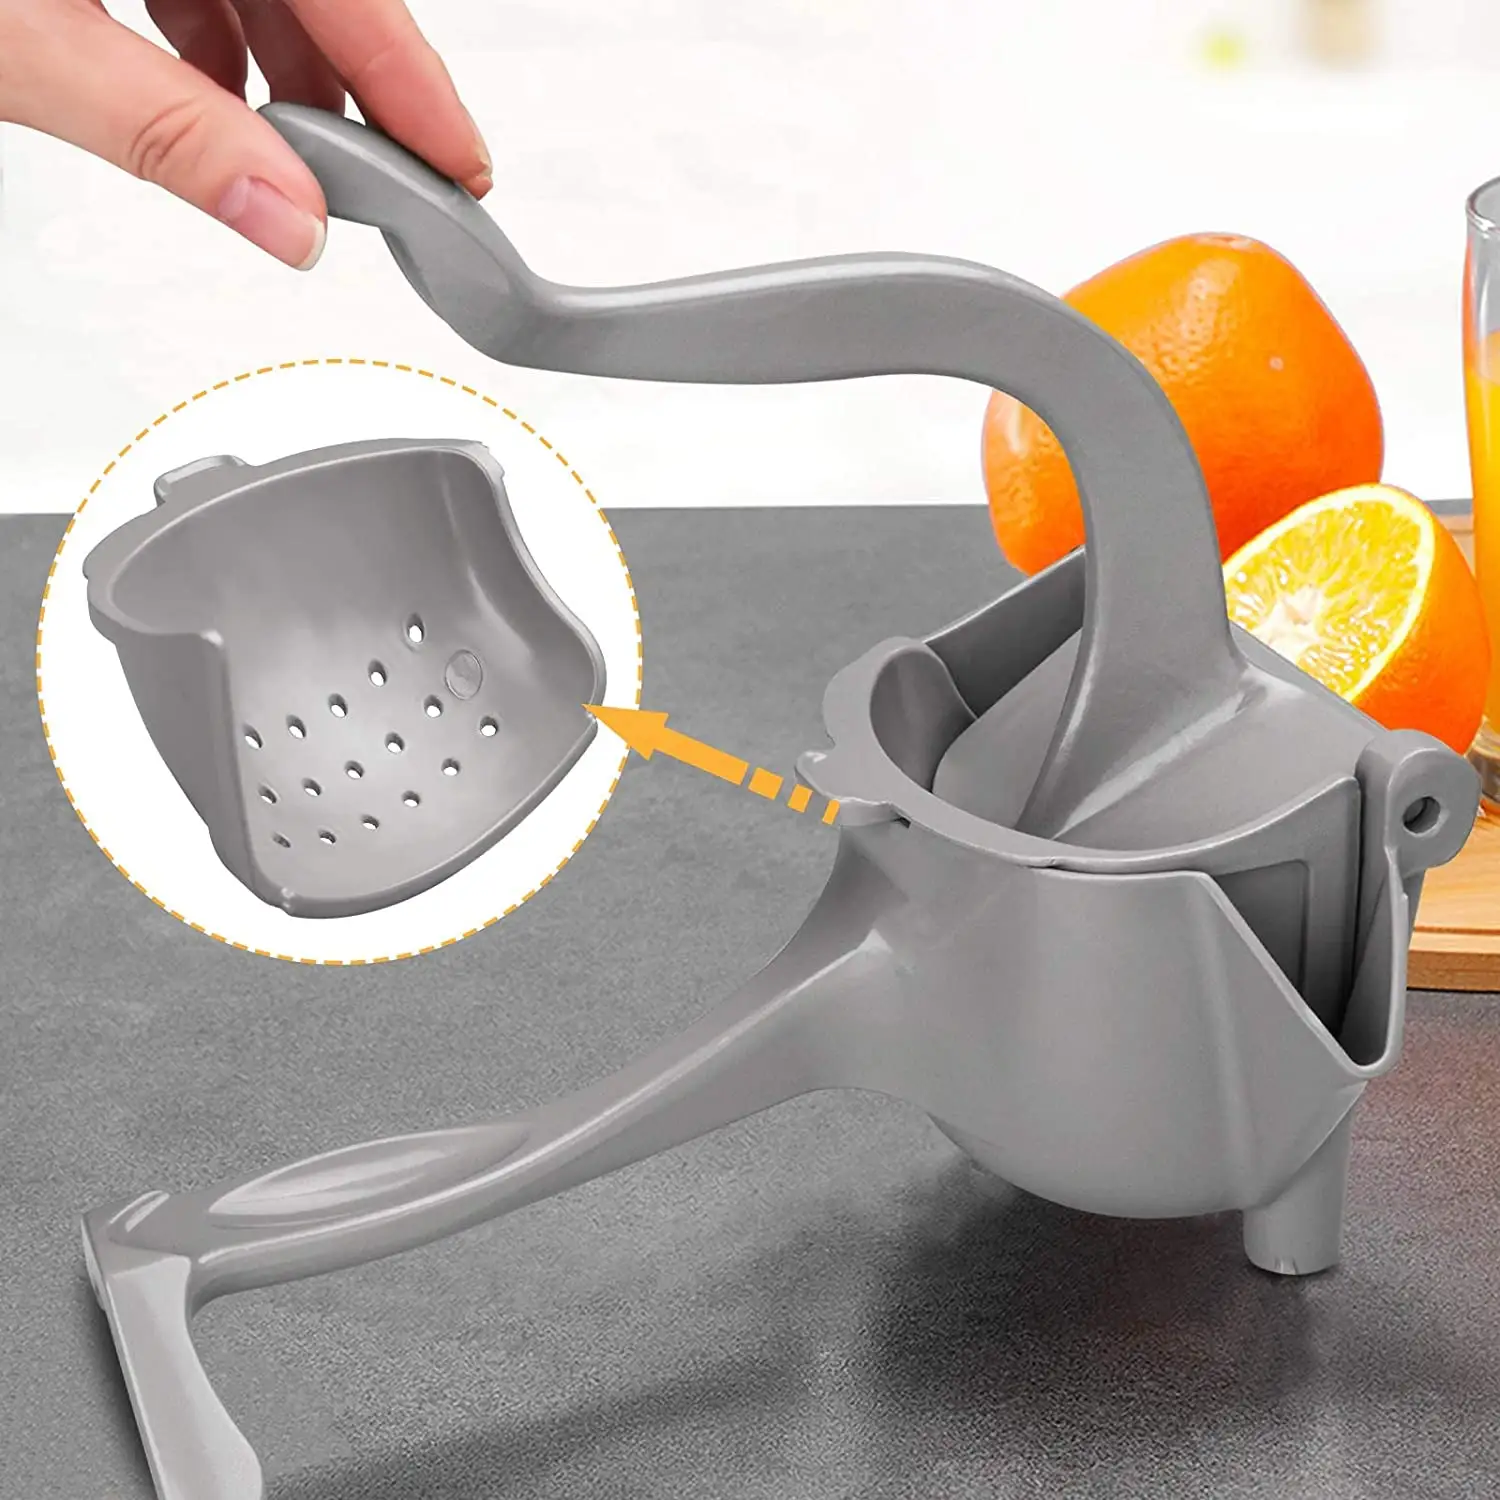 Tragbarer Zitronen-Orangen-Zuckerrohr-Quetscher 304 Edelstahl-Hands aft presse Press Extractor Mini Manual Citrus Juicer